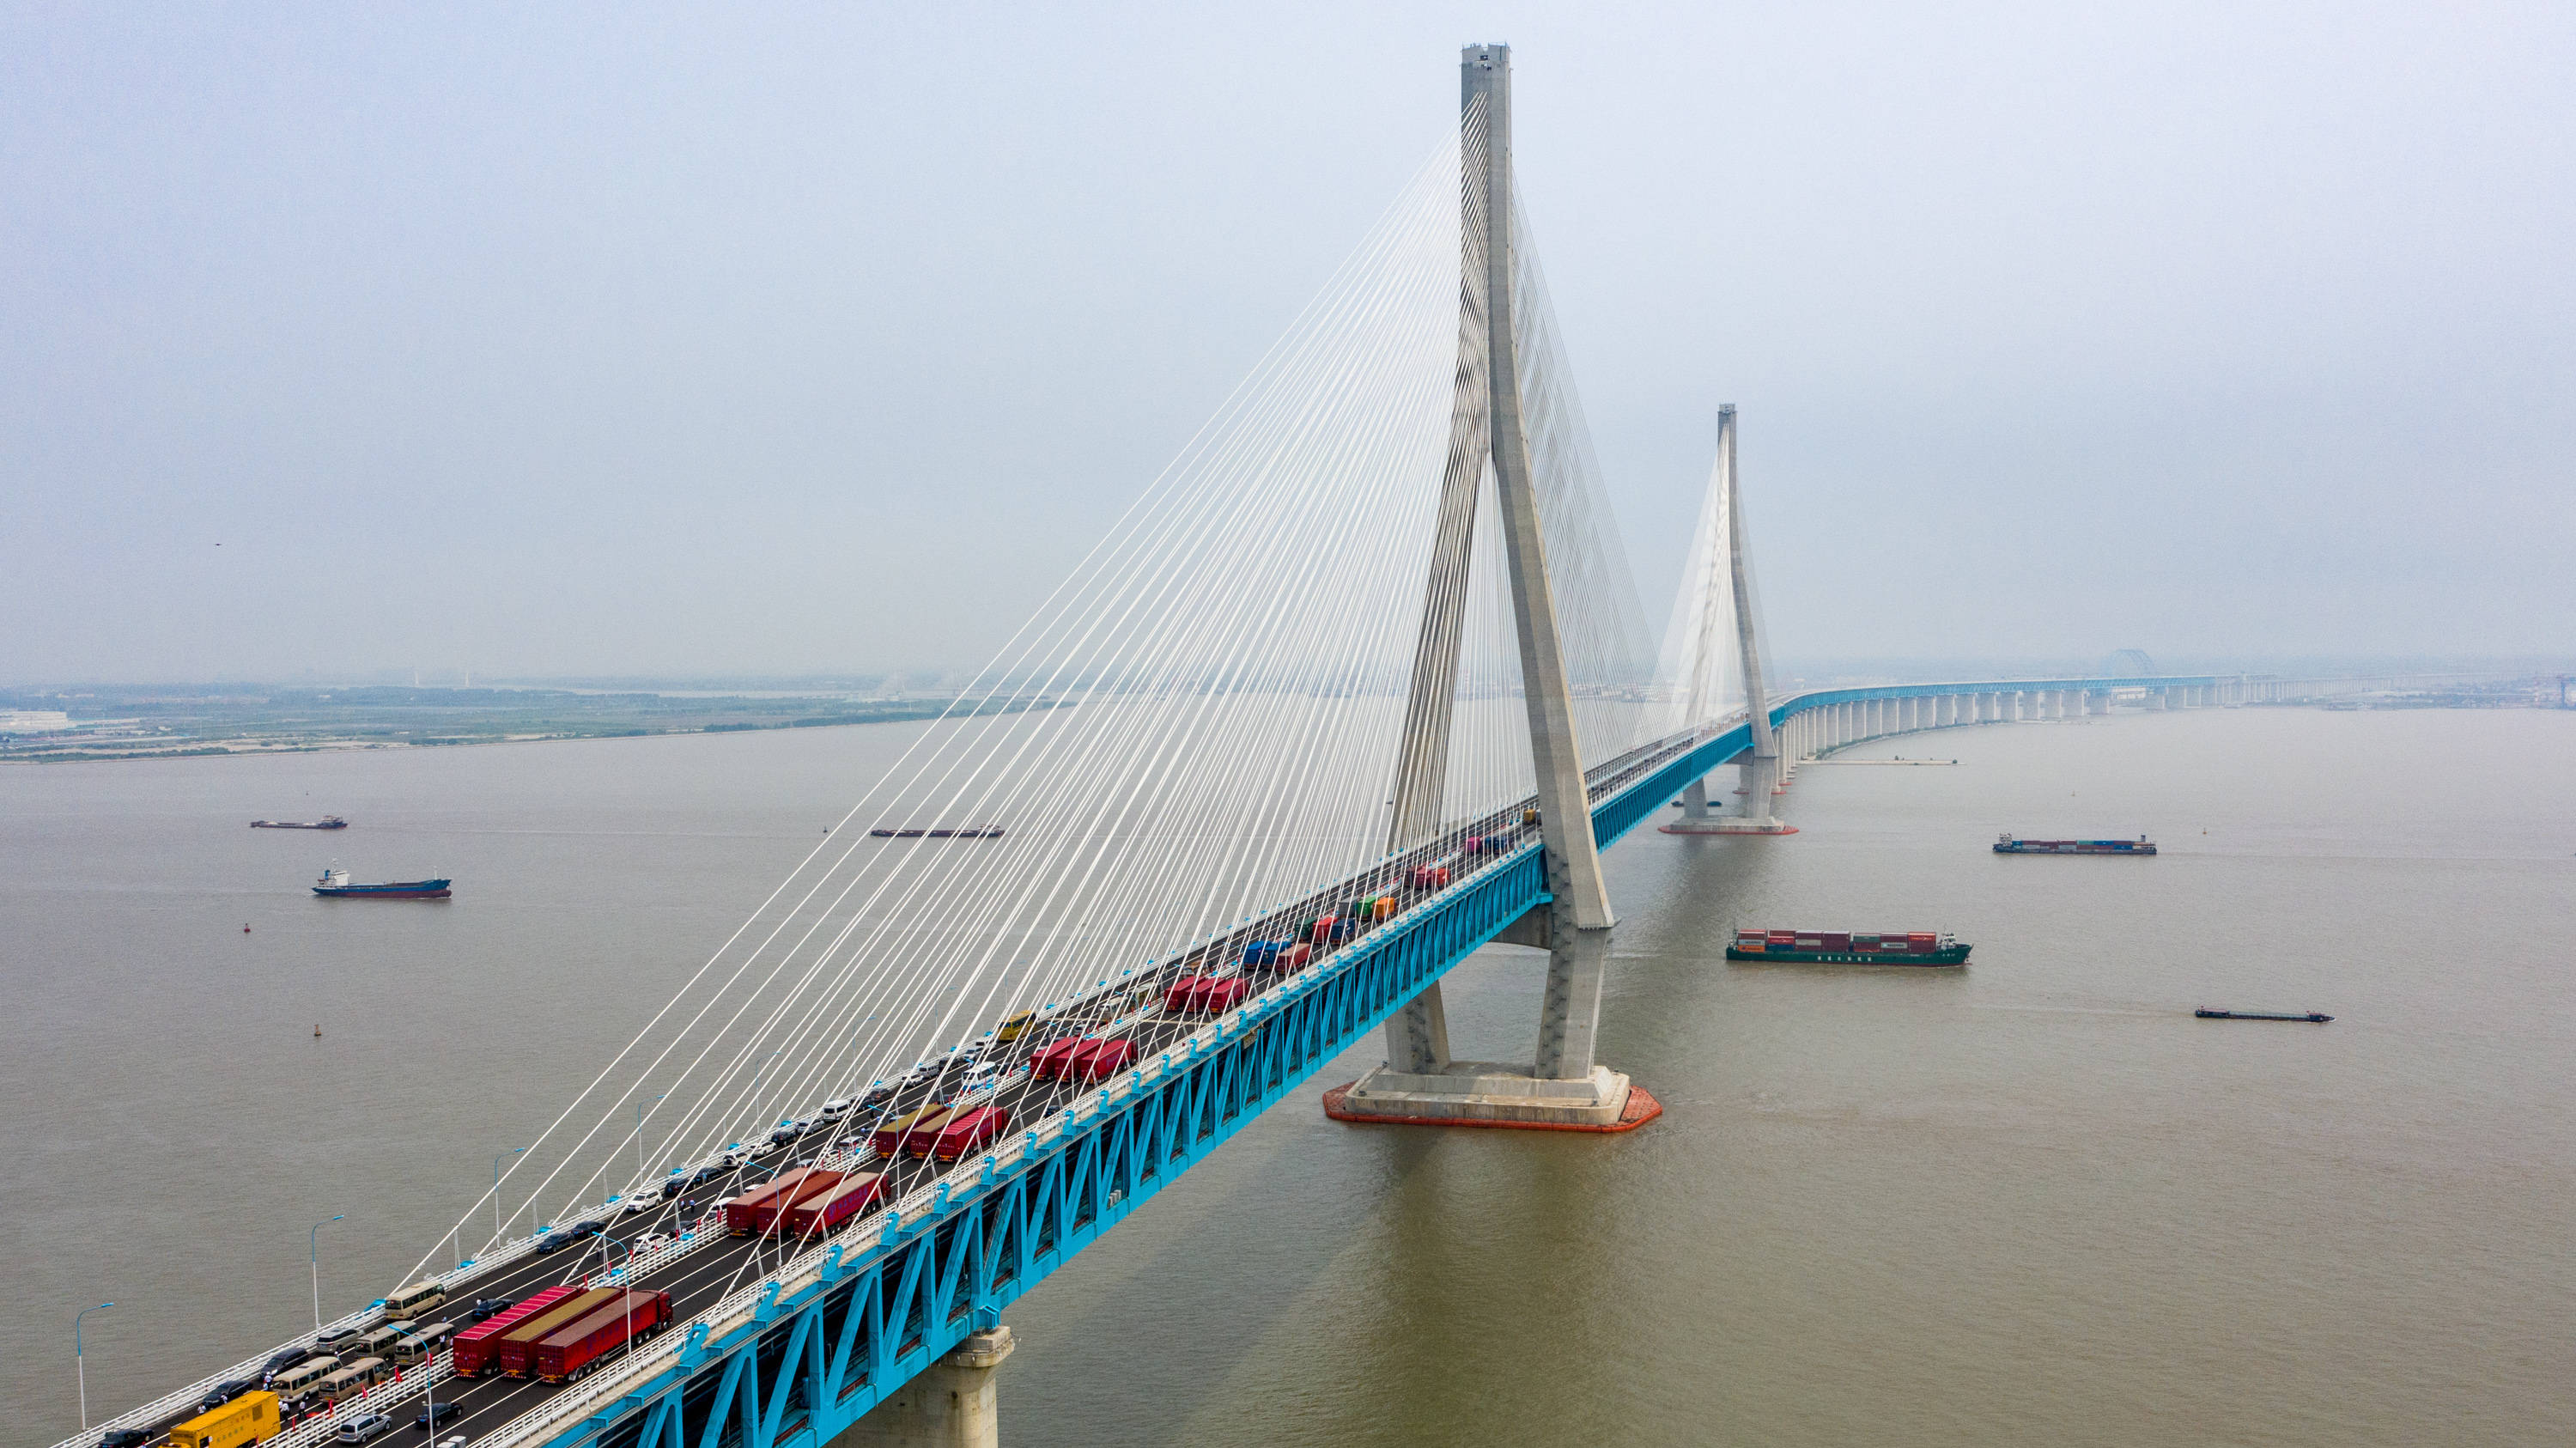 沪苏通长江公铁大桥正式开通运营